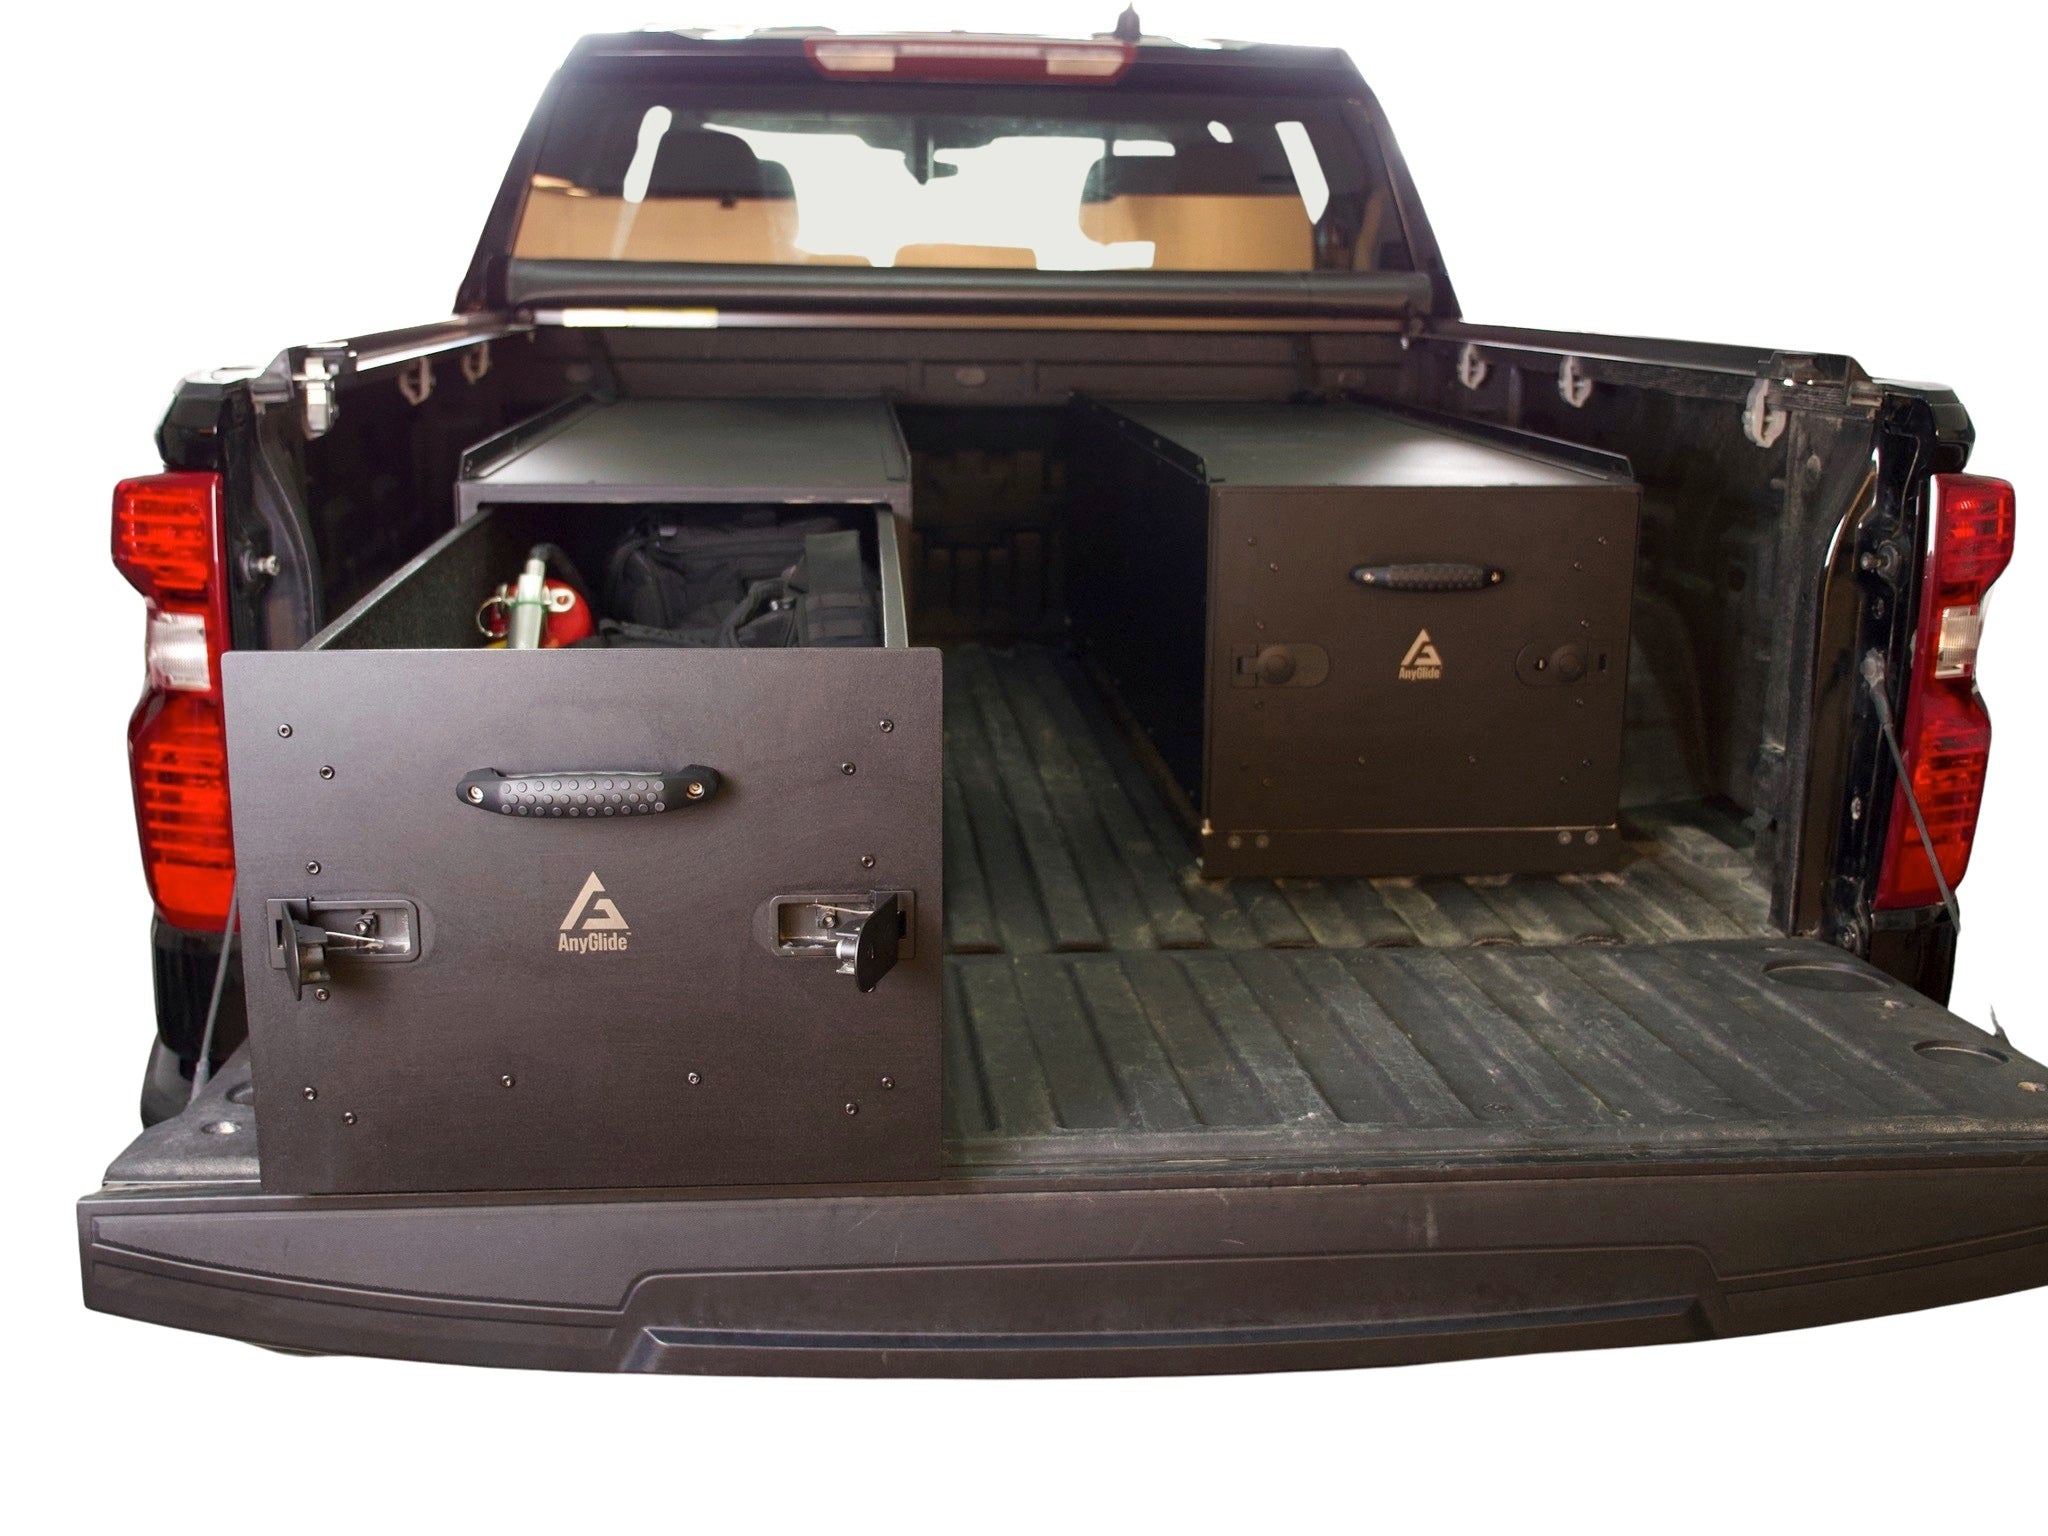 Mega 44 Truck Bed Storage Solution